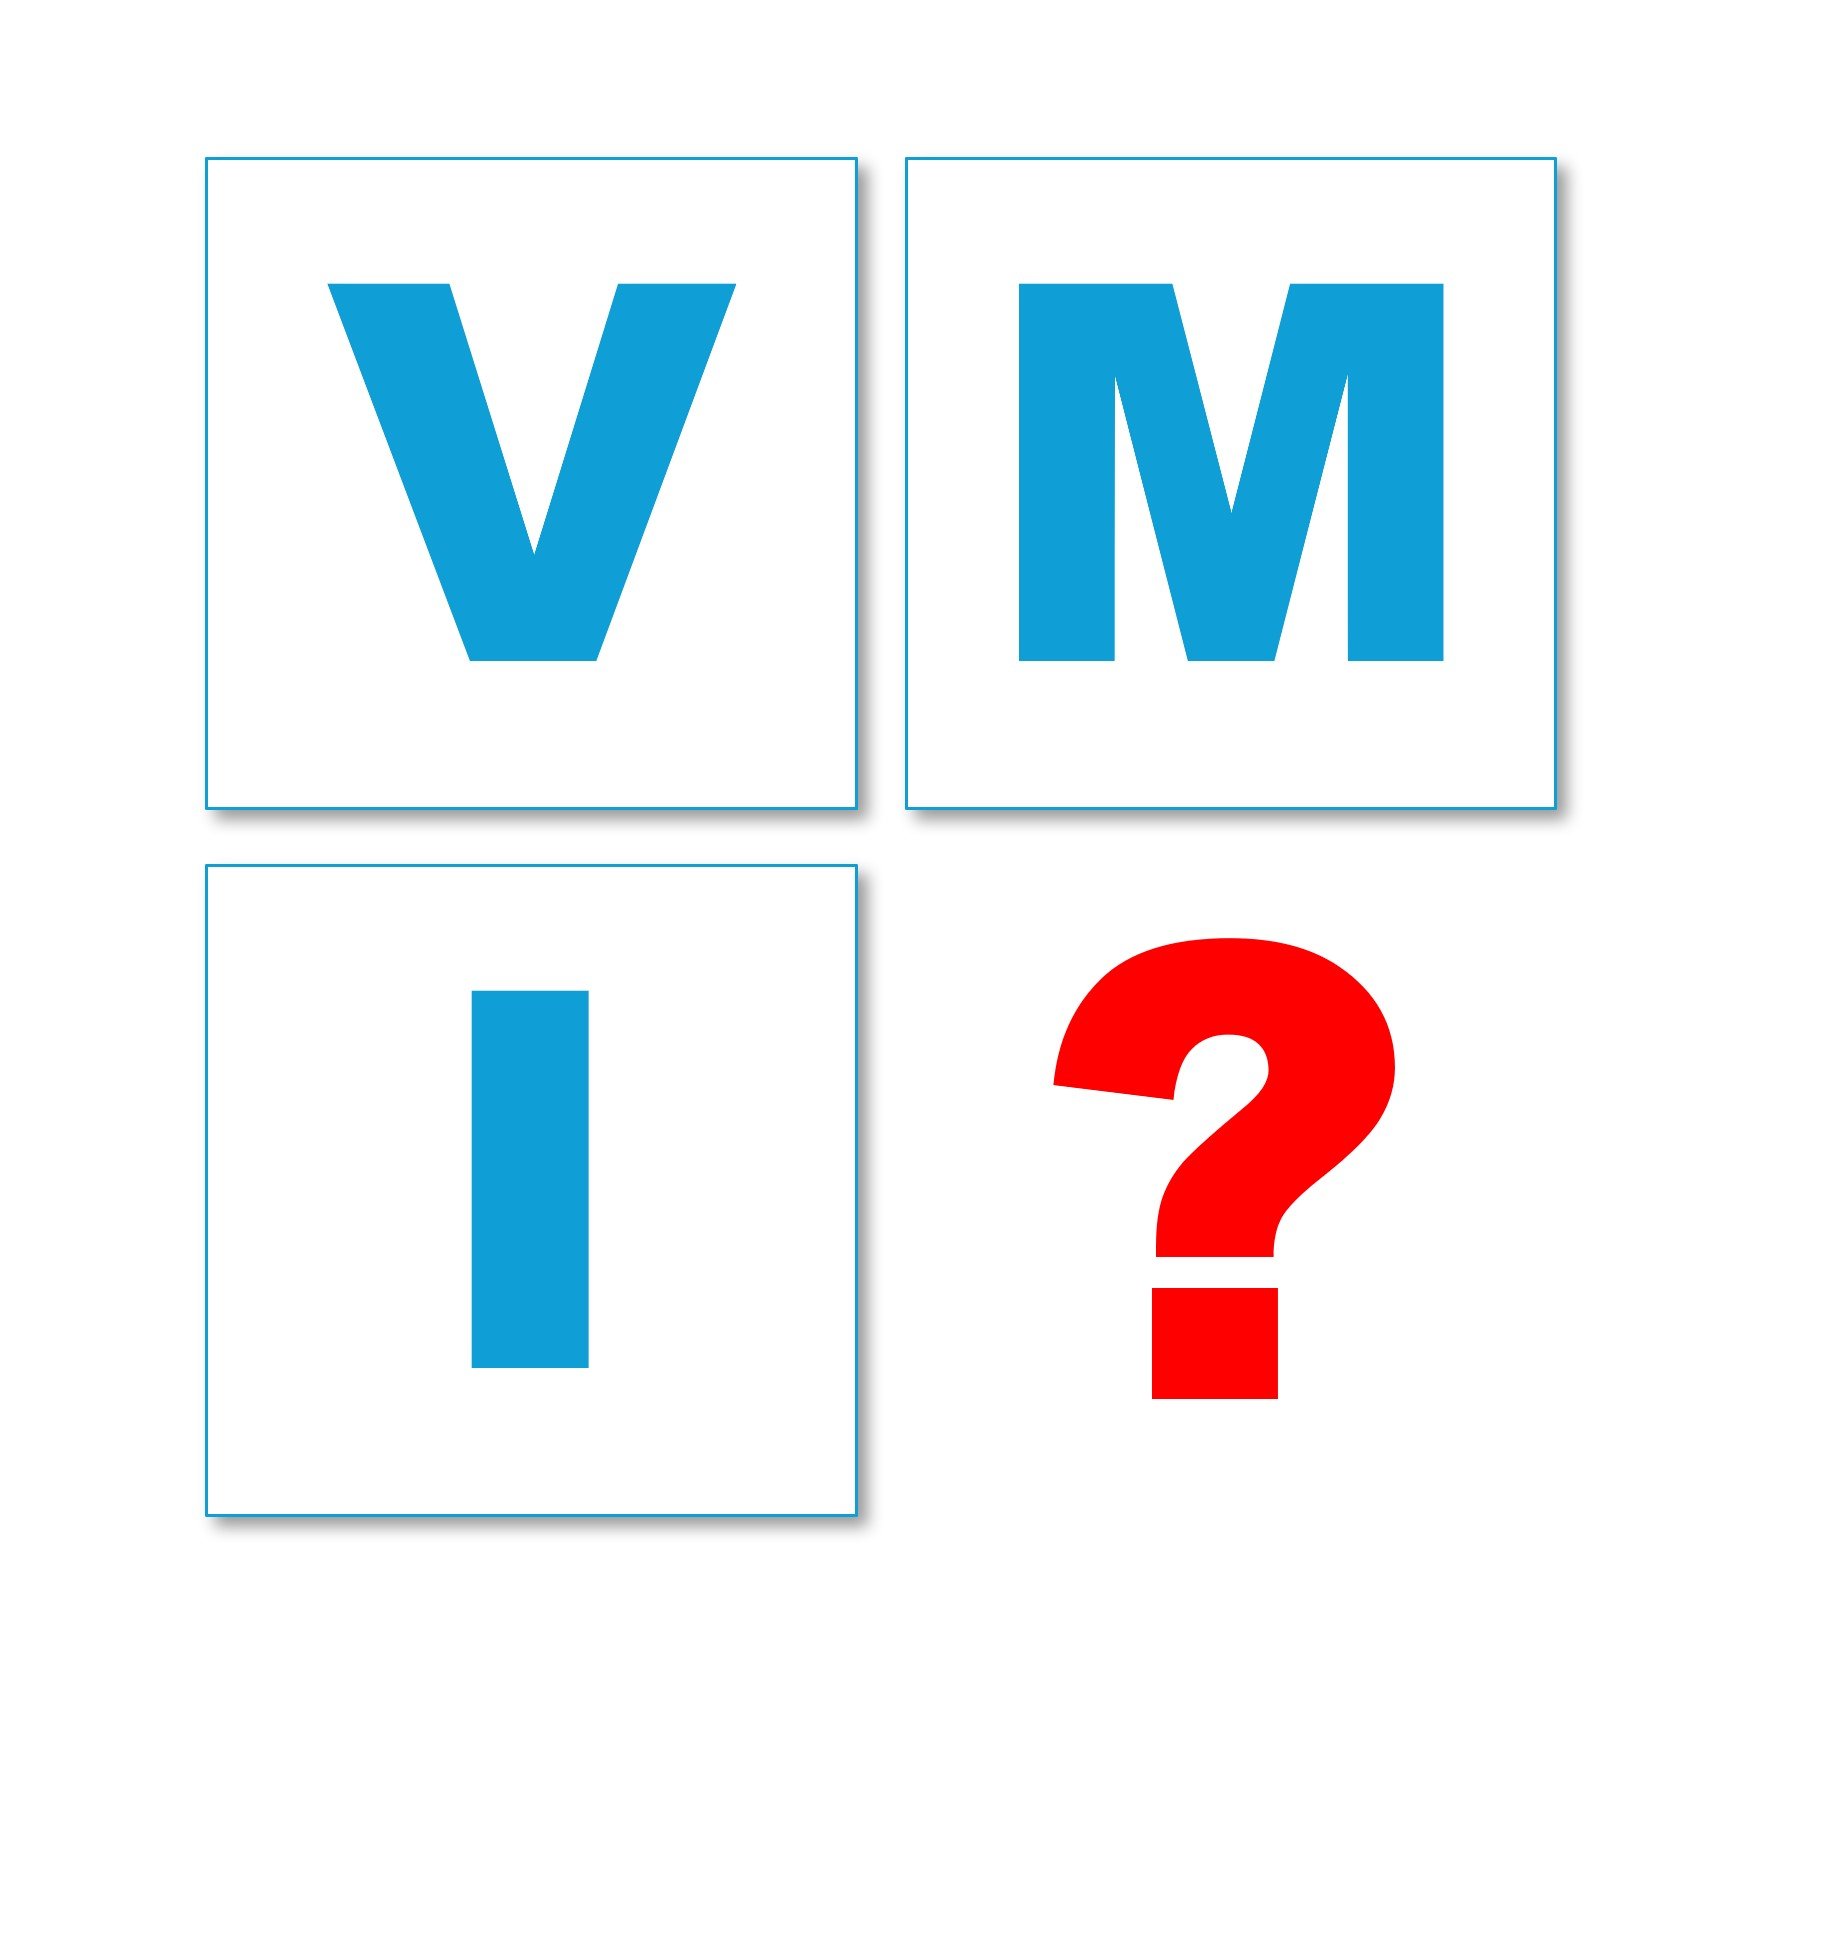 Yamazato's fasteners diary / What is VMI?